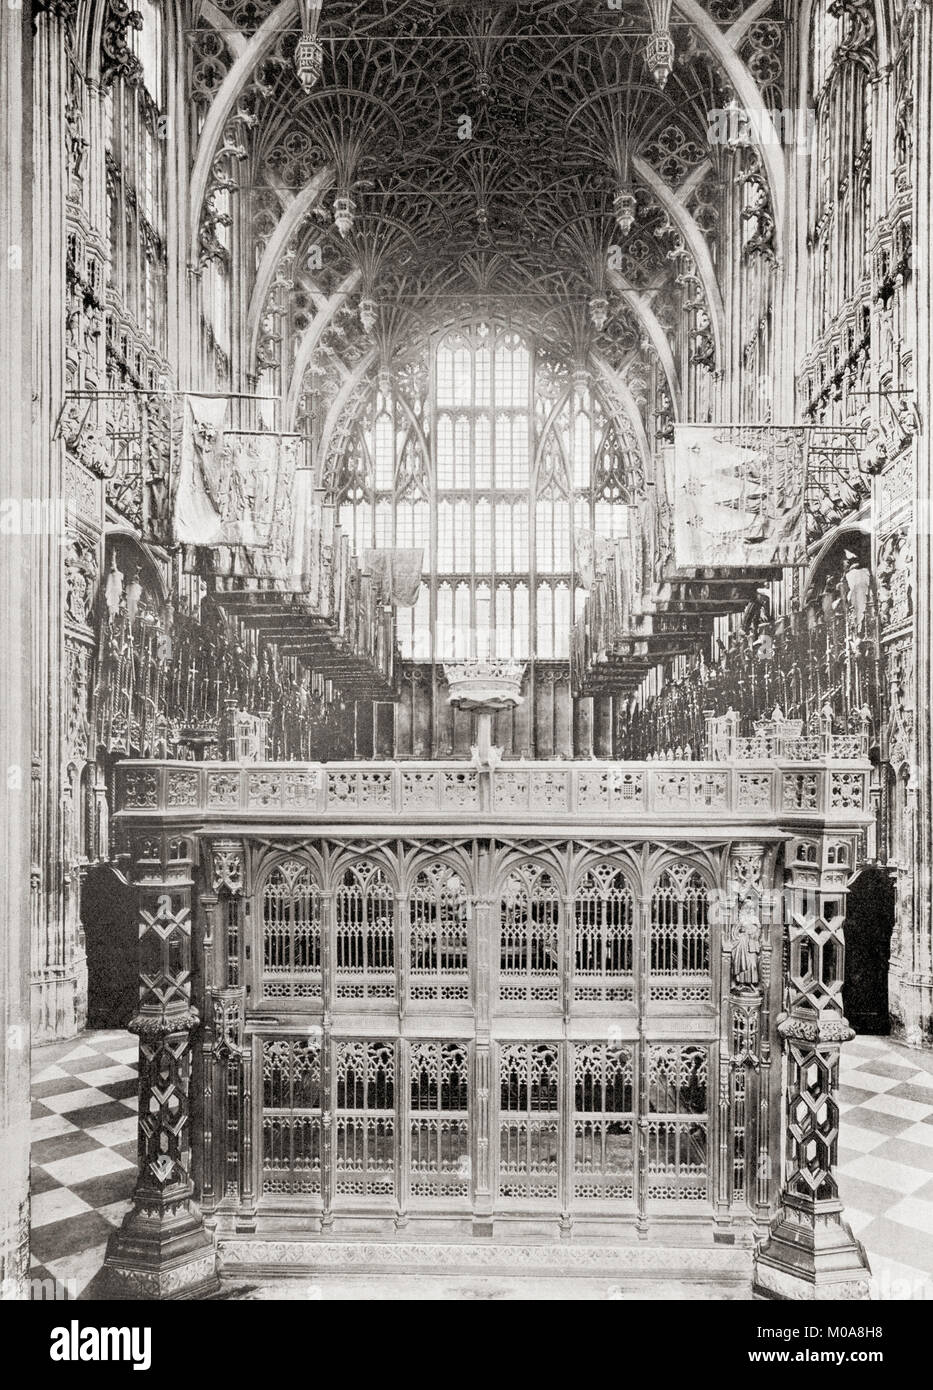 La Lady Chapel Henri VII, alias Henry VII Chapel, l'abbaye de Westminster, Londres, Angleterre. Des merveilles du monde, publié c.1911. Banque D'Images